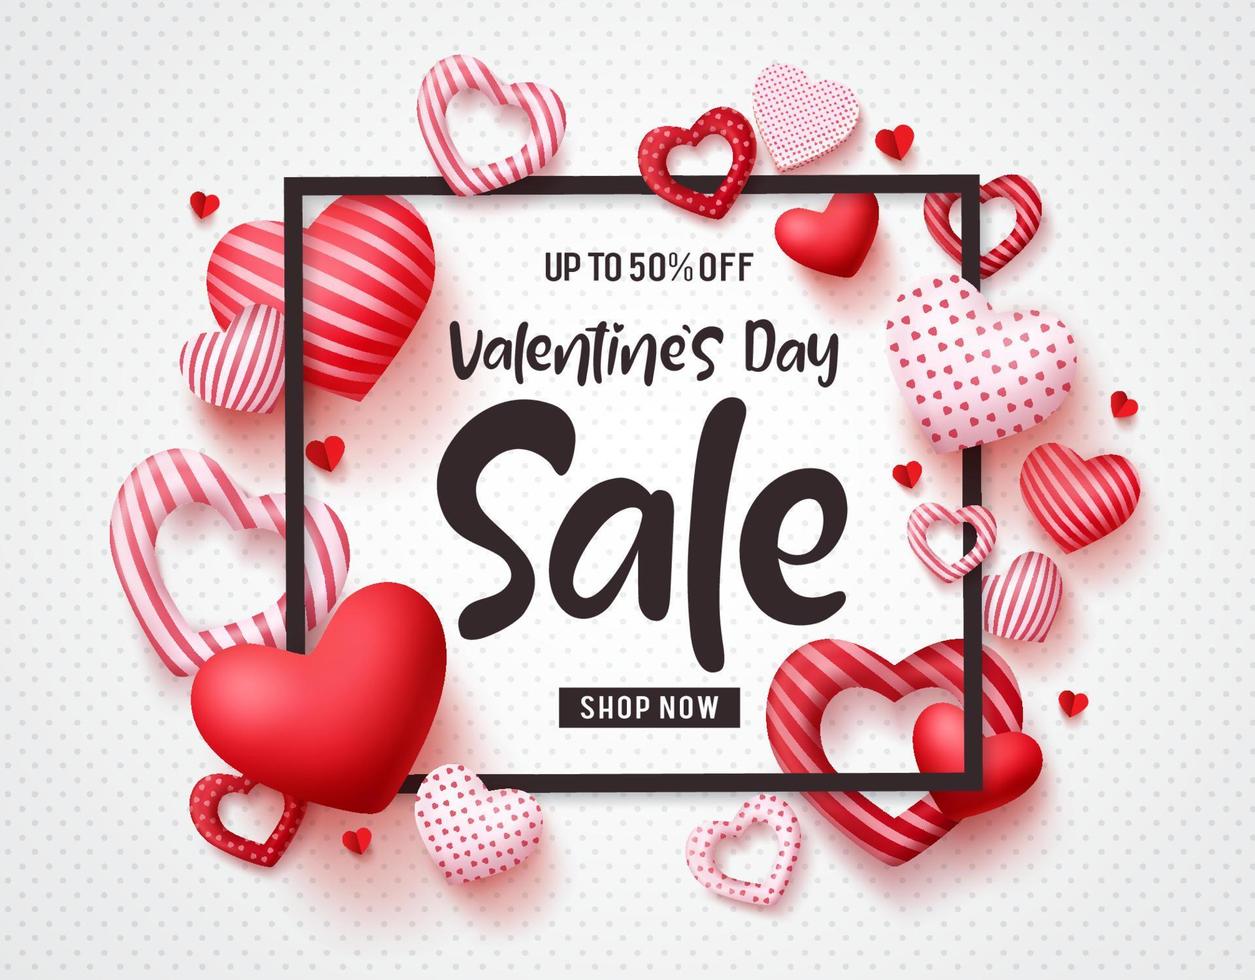 Plantilla de banner de vector de venta de San Valentín con texto de promoción de venta, elementos de corazones y un marco en fondo blanco. ilustración vectorial.